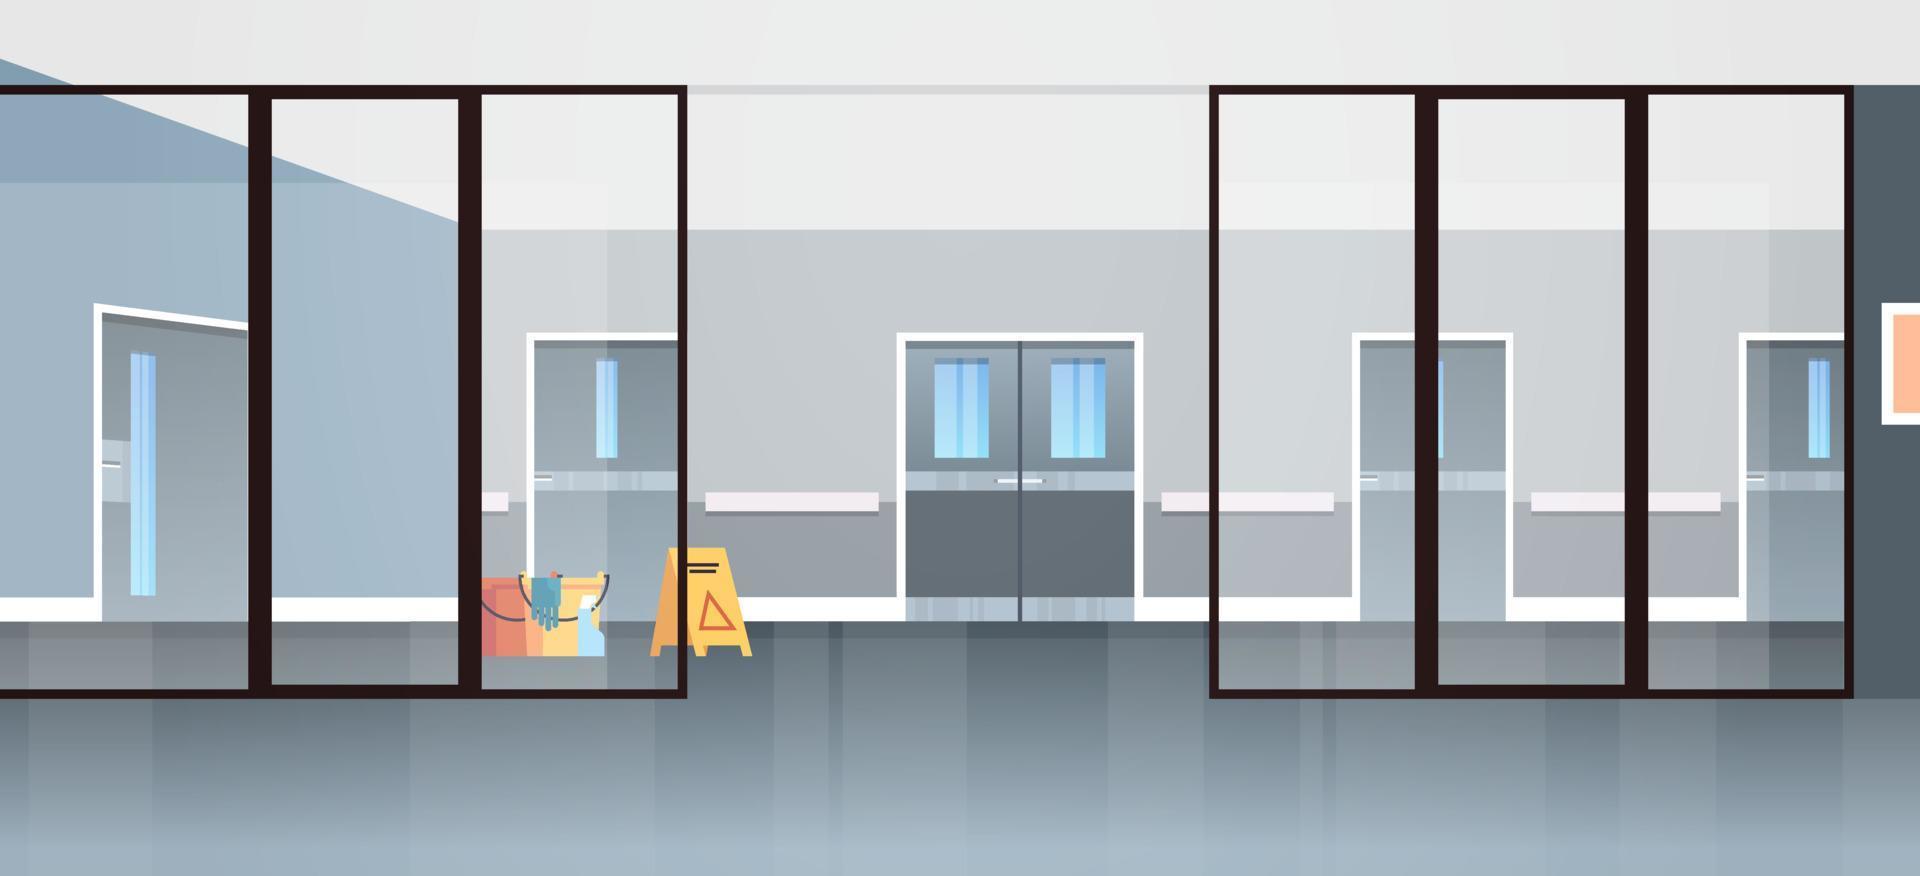 leeg ziekenhuis gang gebied geen mensen en open ruimte moderne ziekenhuis kamers gang interieur platte vectorillustratie. vector